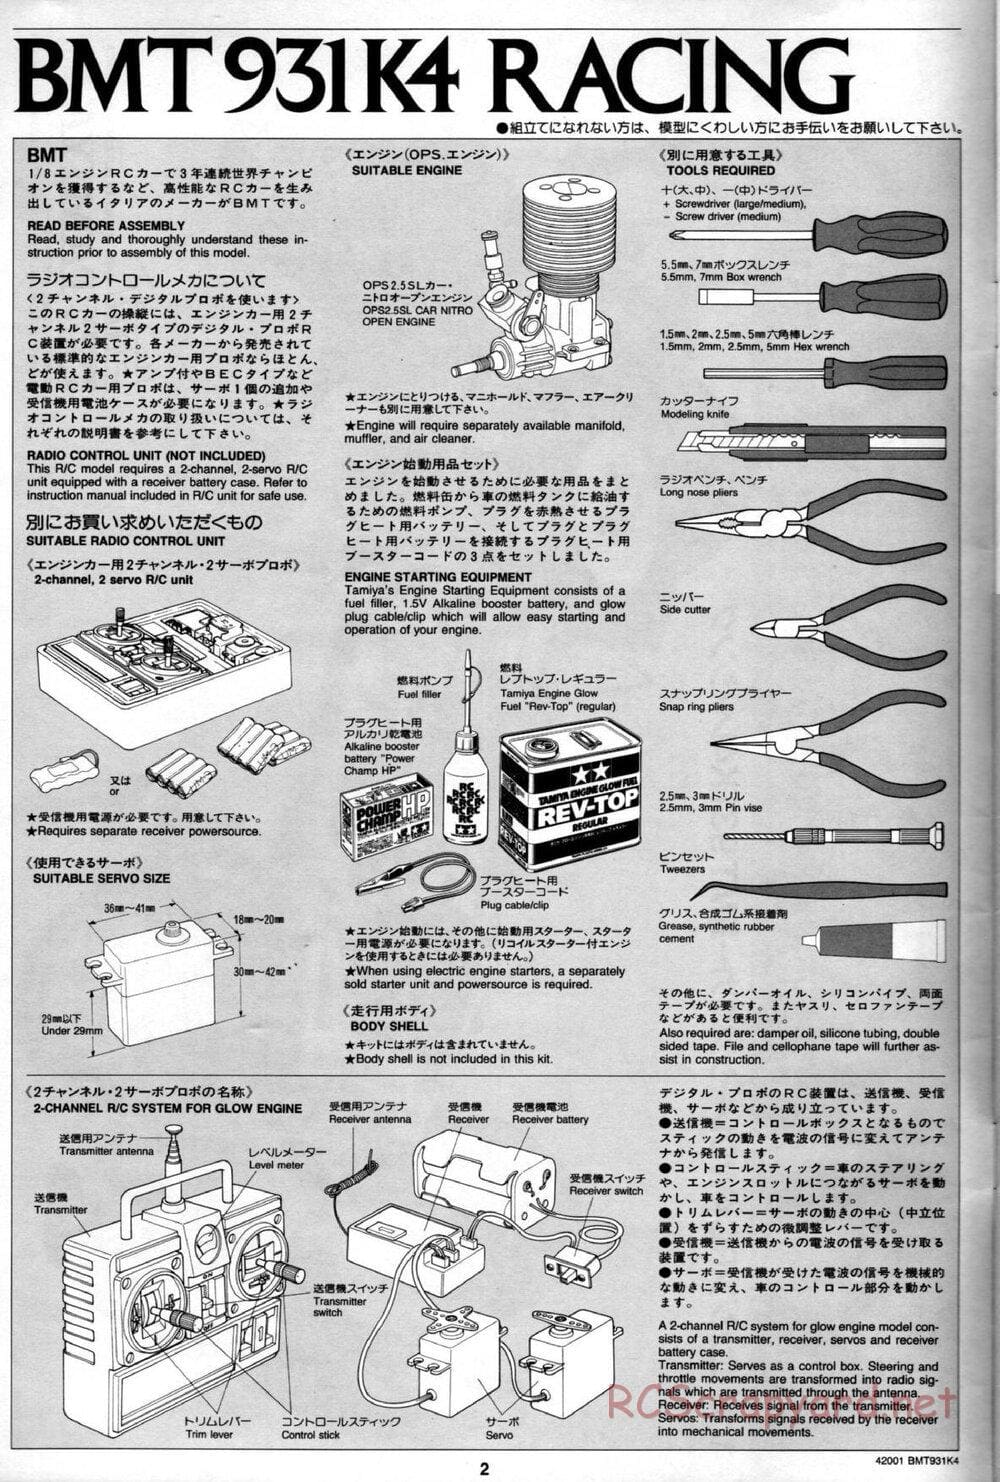 Tamiya - BMT 931 K4 Racing Chassis - Manual - Page 2